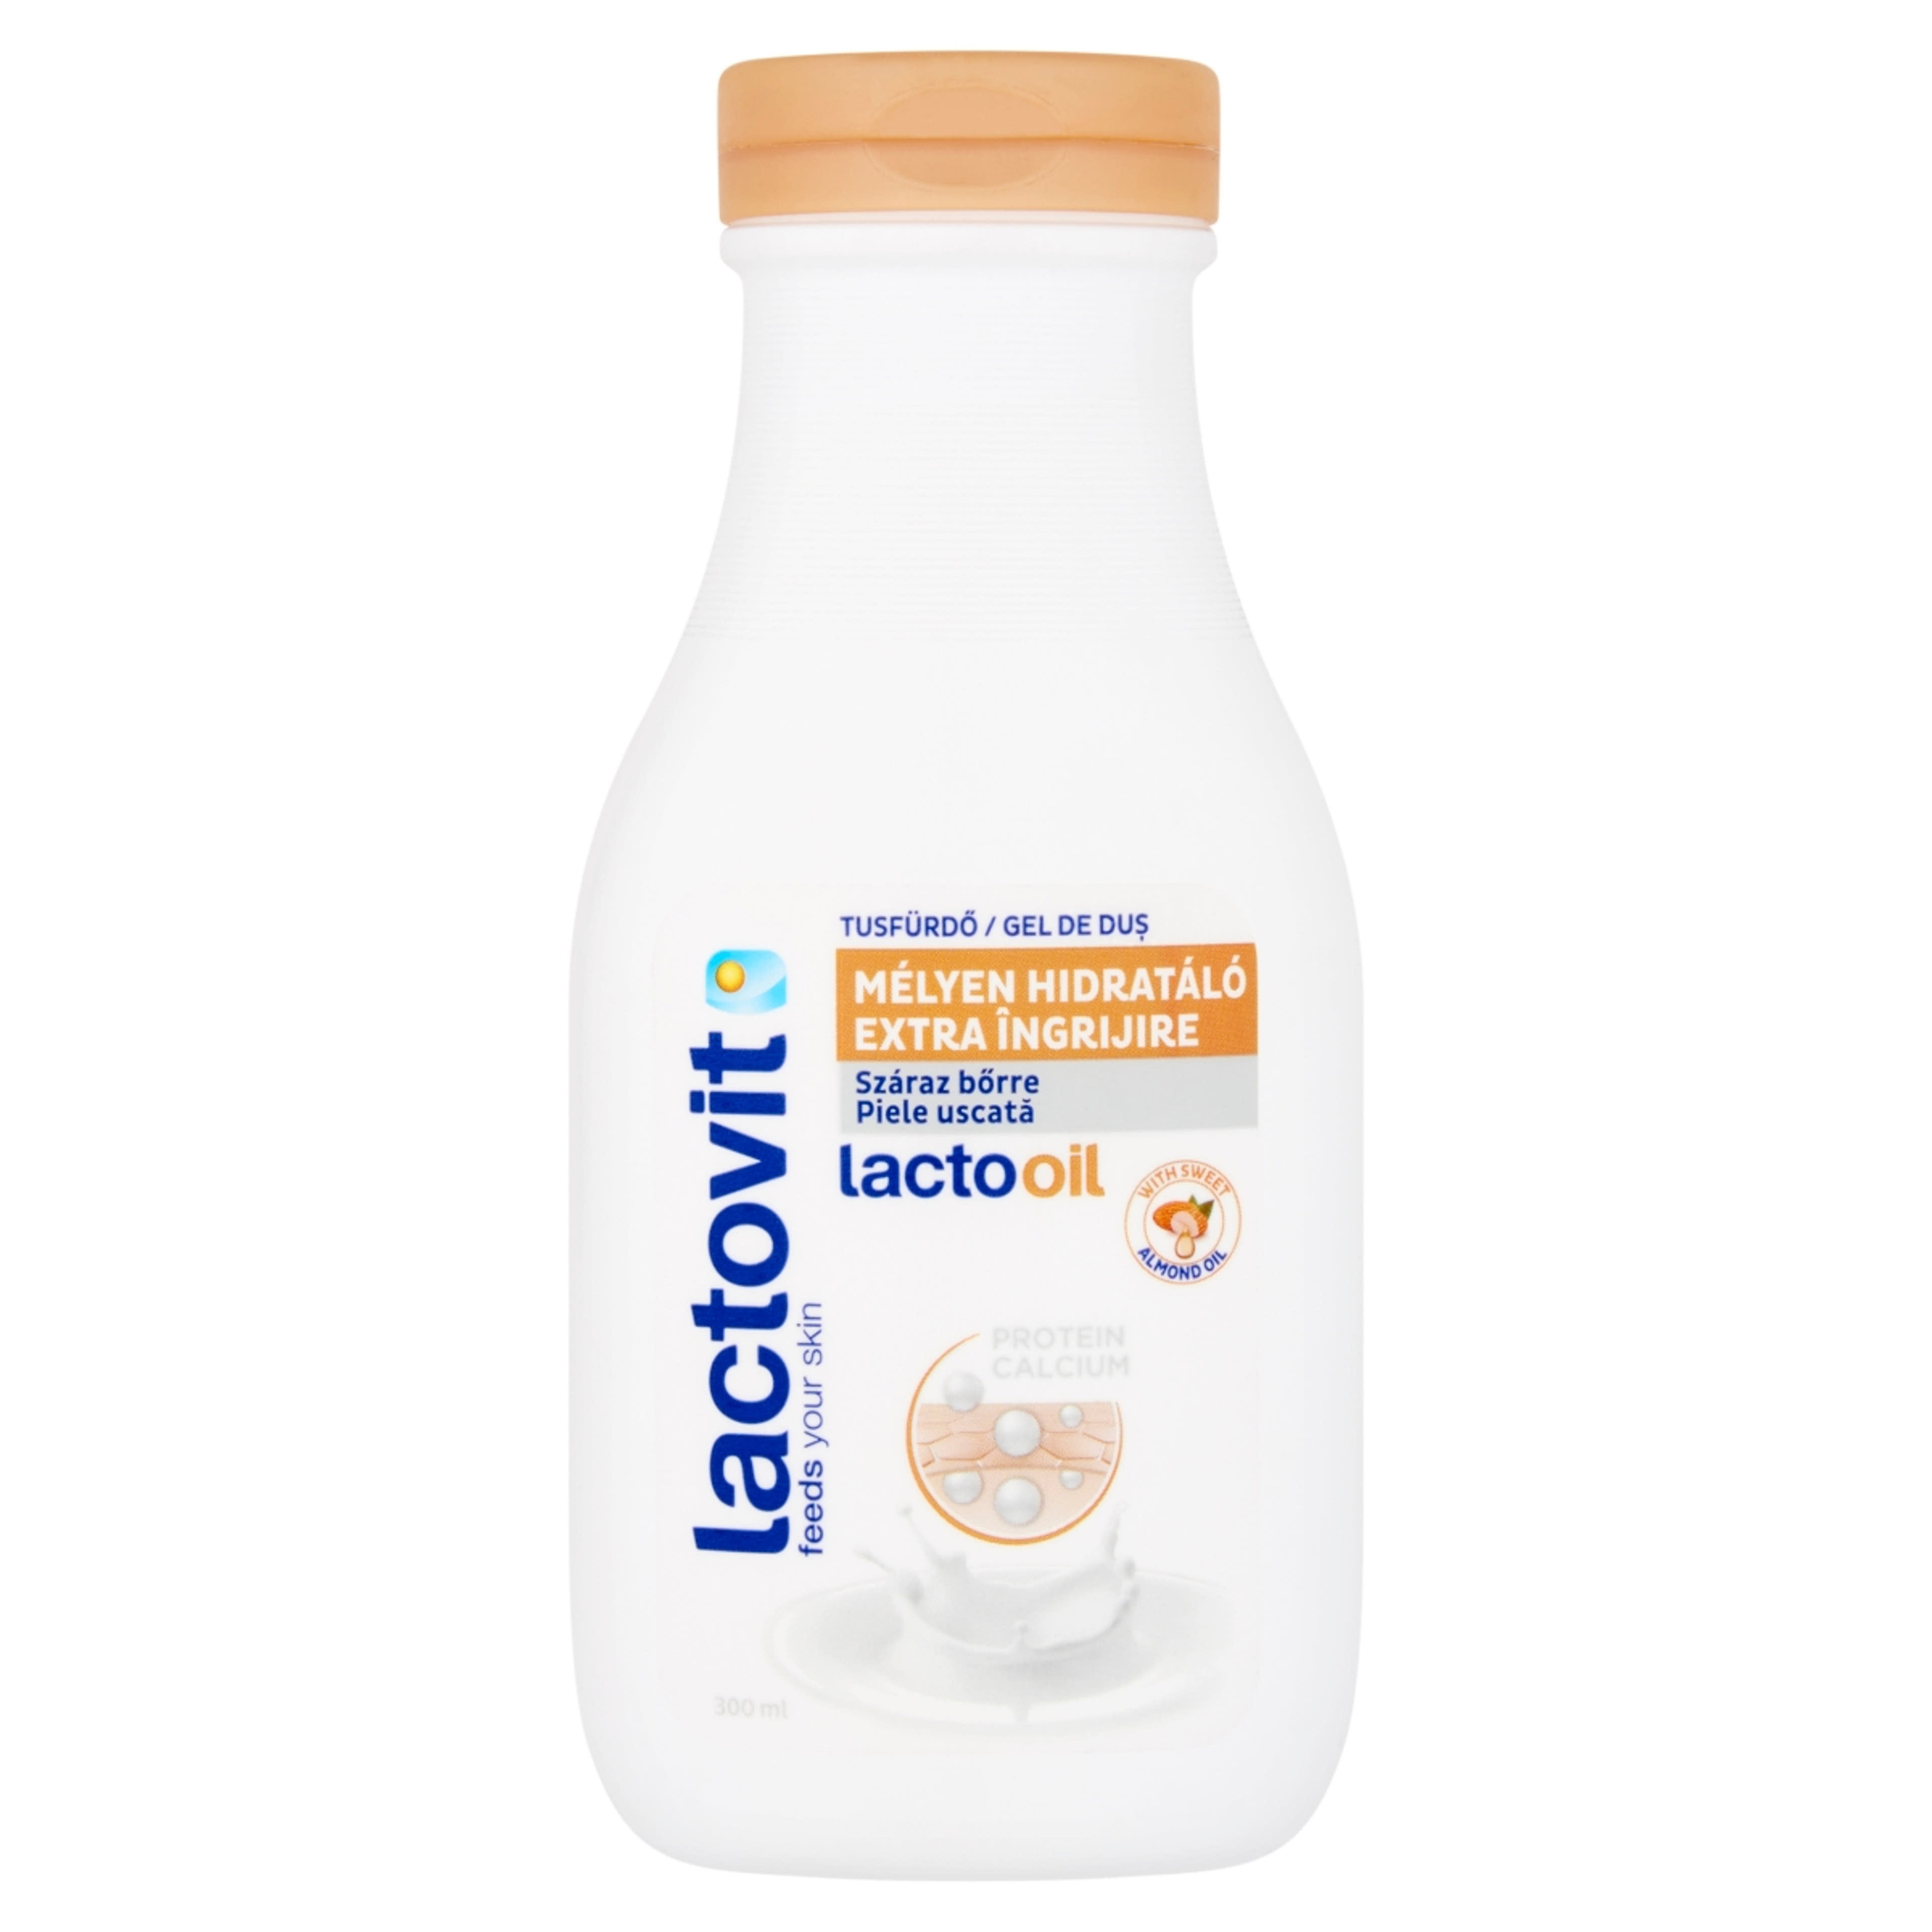 Lactovit tusfürdő Lactooil - 300 ml